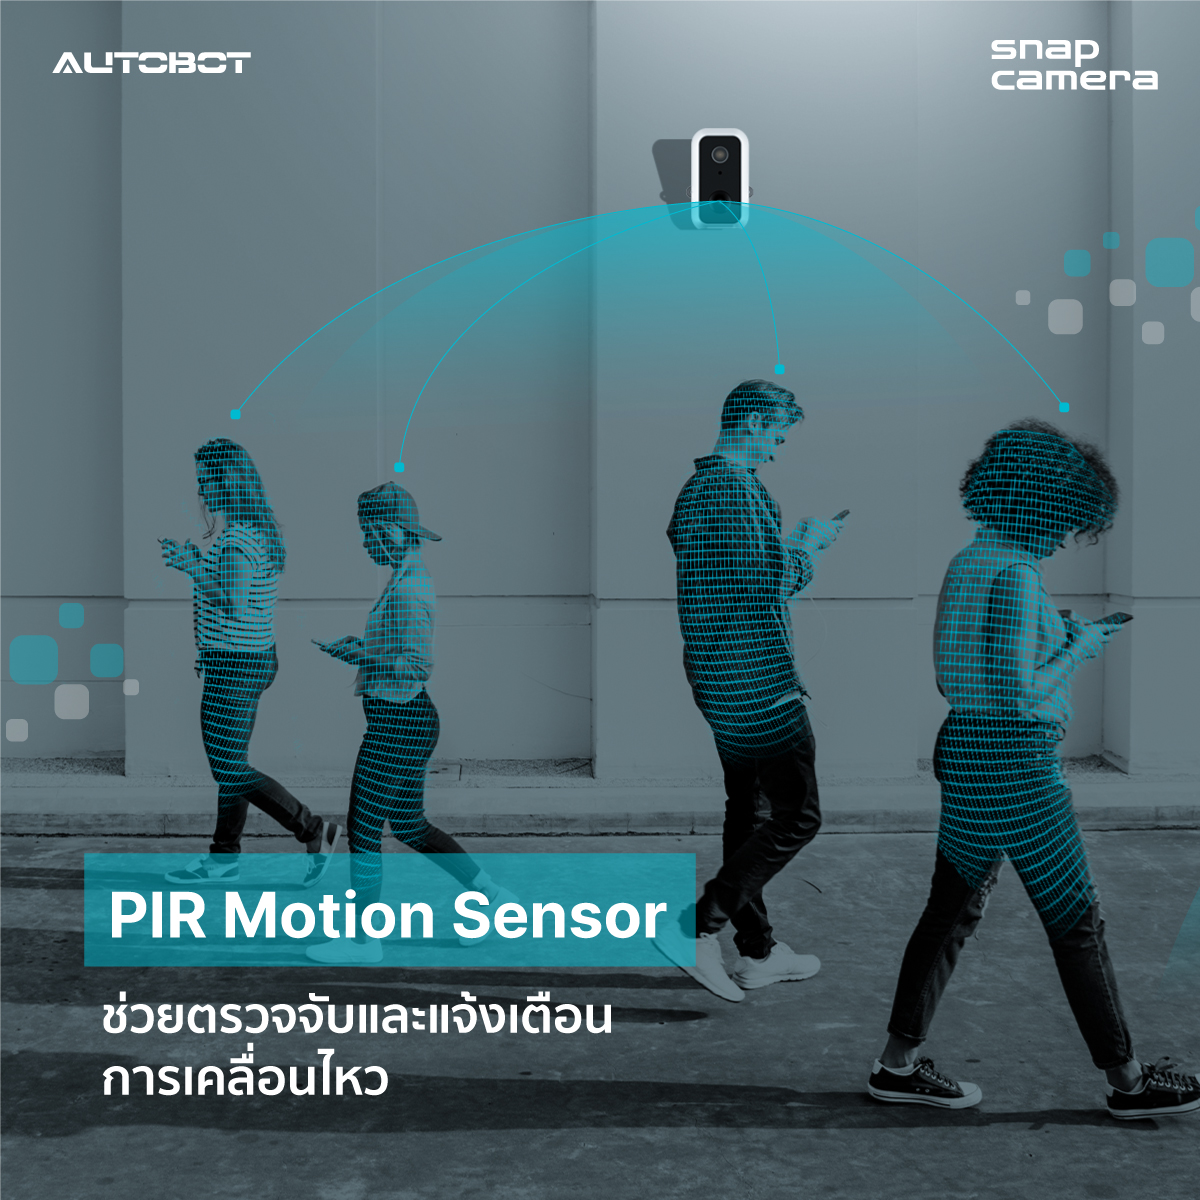 AUTOBOT snap camera กล้องวงจรปิด ระบบ PIR motion sensor ถ่ายภาพเคลื่อนไหว พร้อมแจ้งเตือน ไม่ง้อสายไฟ ฟรี Cloud